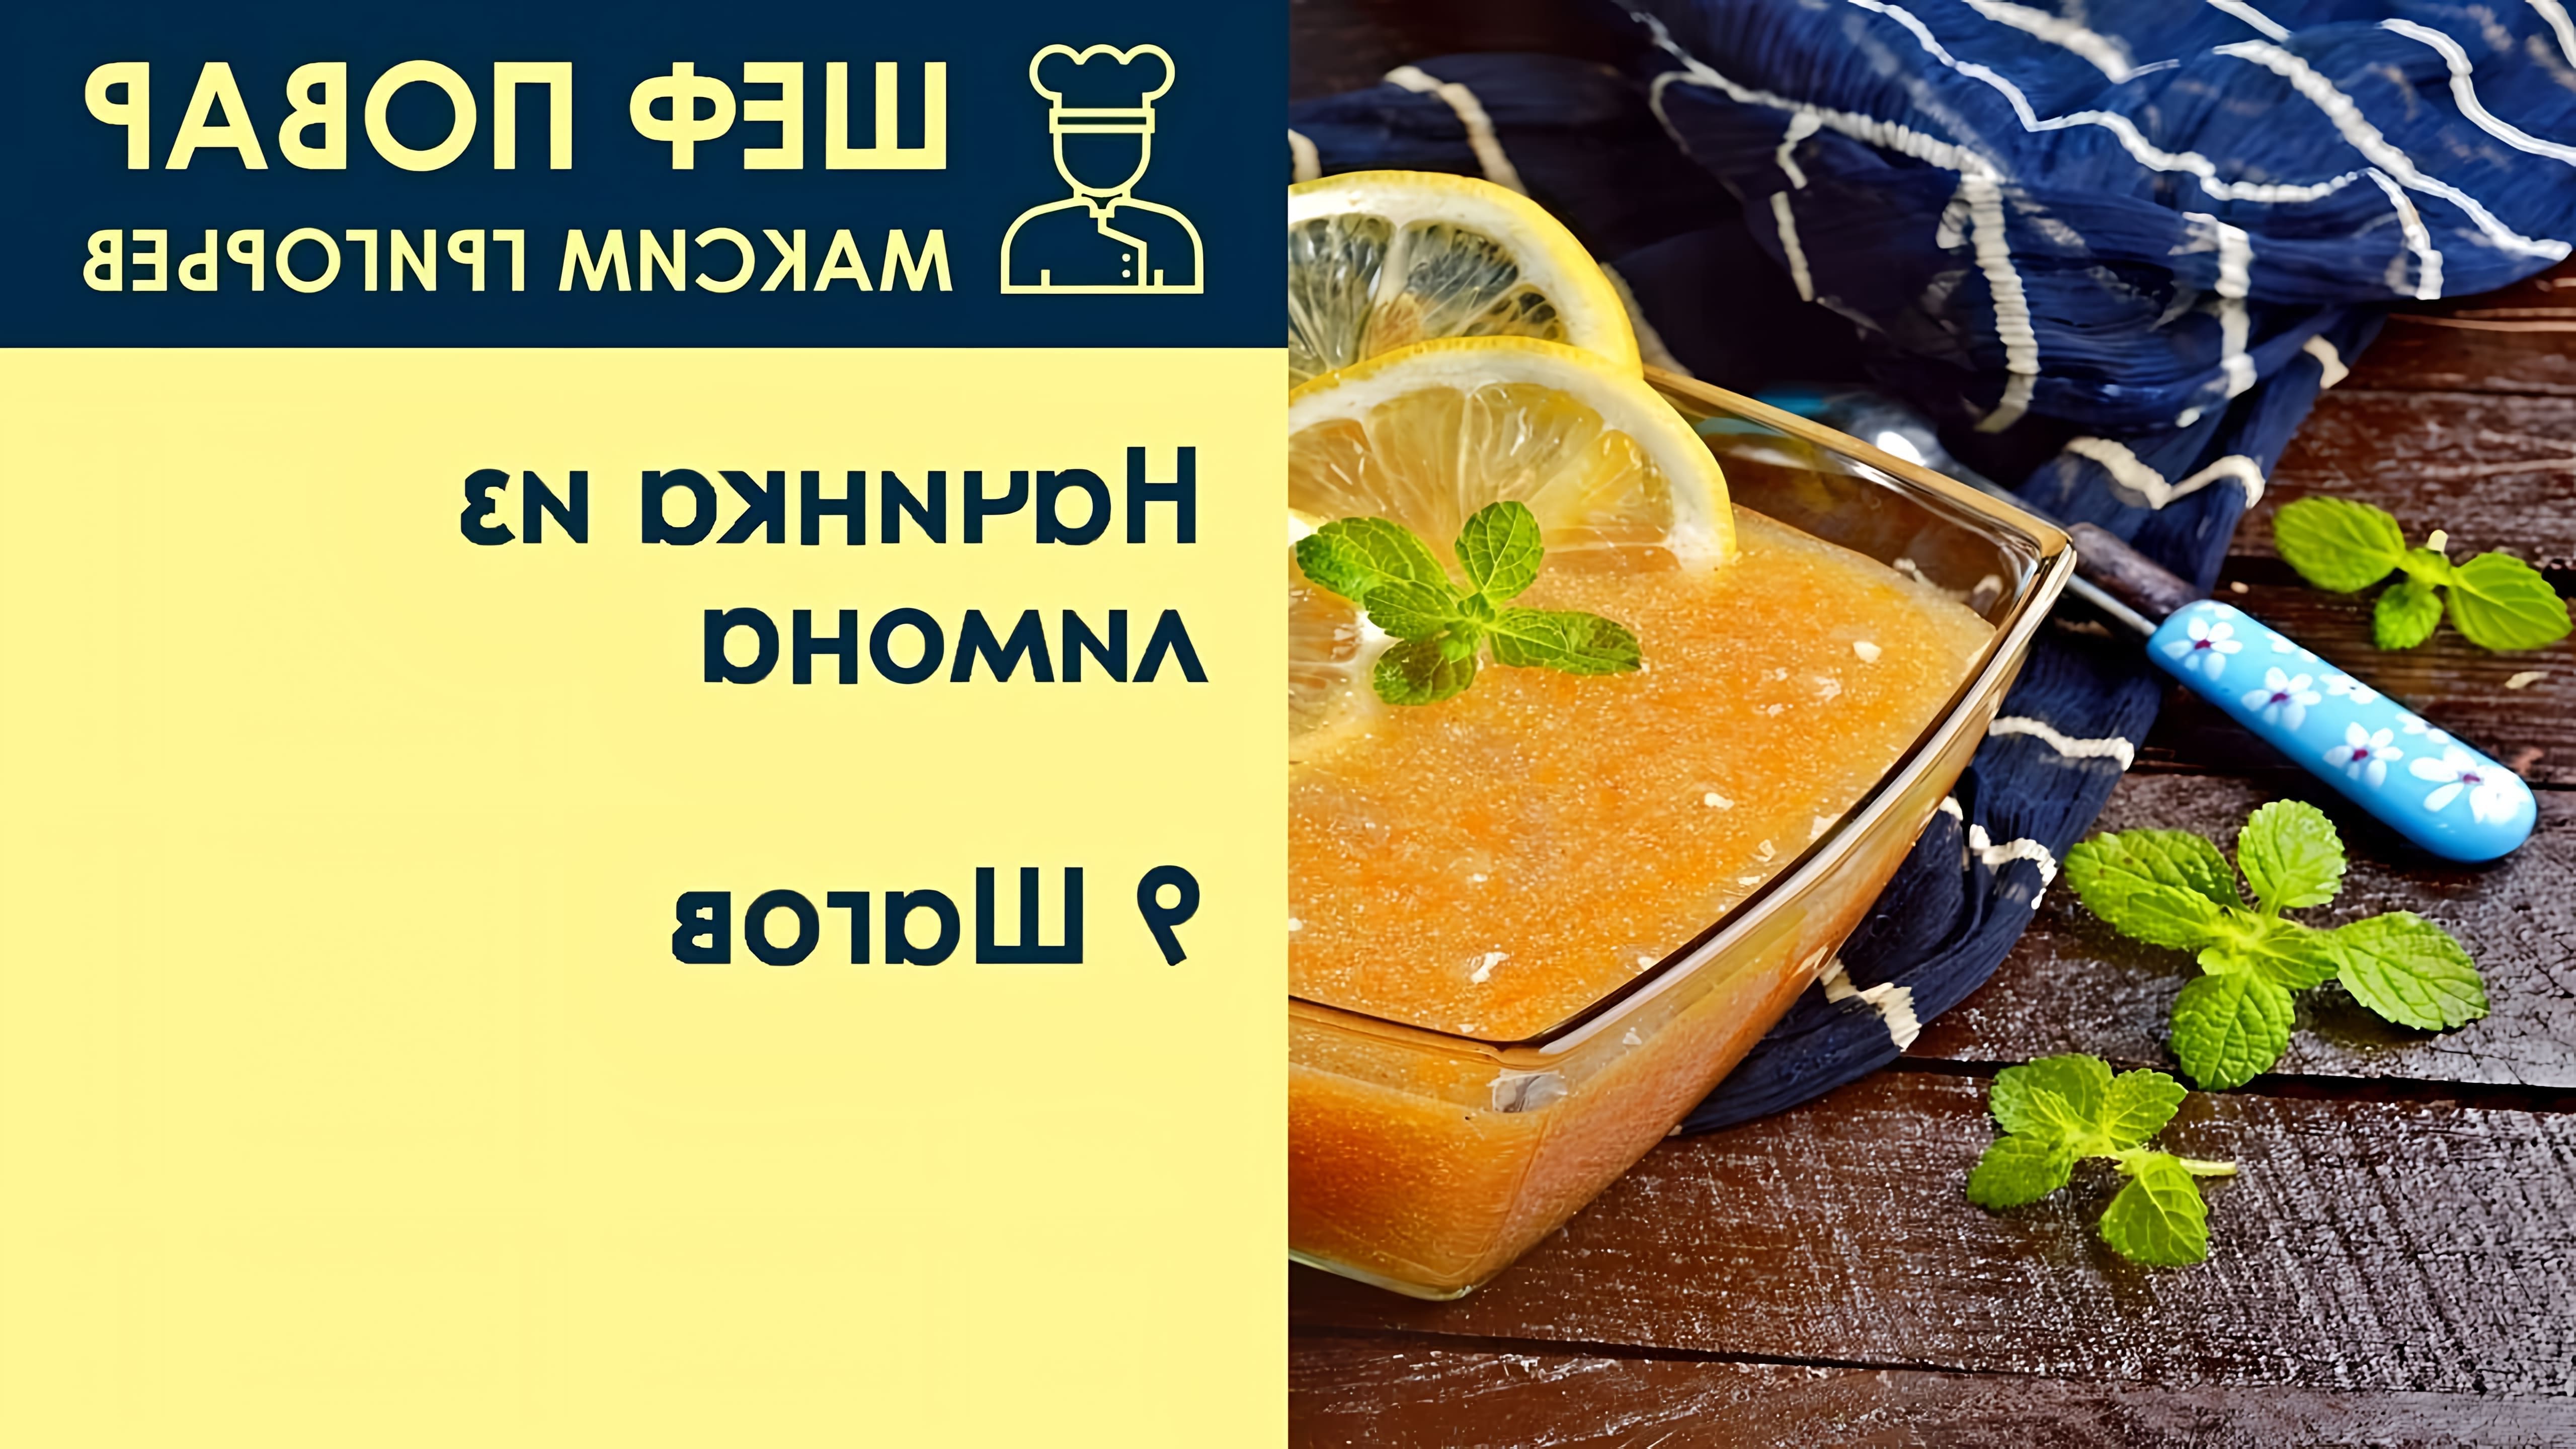 В этом видео шеф-повар Максим Григорьев показывает, как приготовить начинку из лимона для пирога или кекса